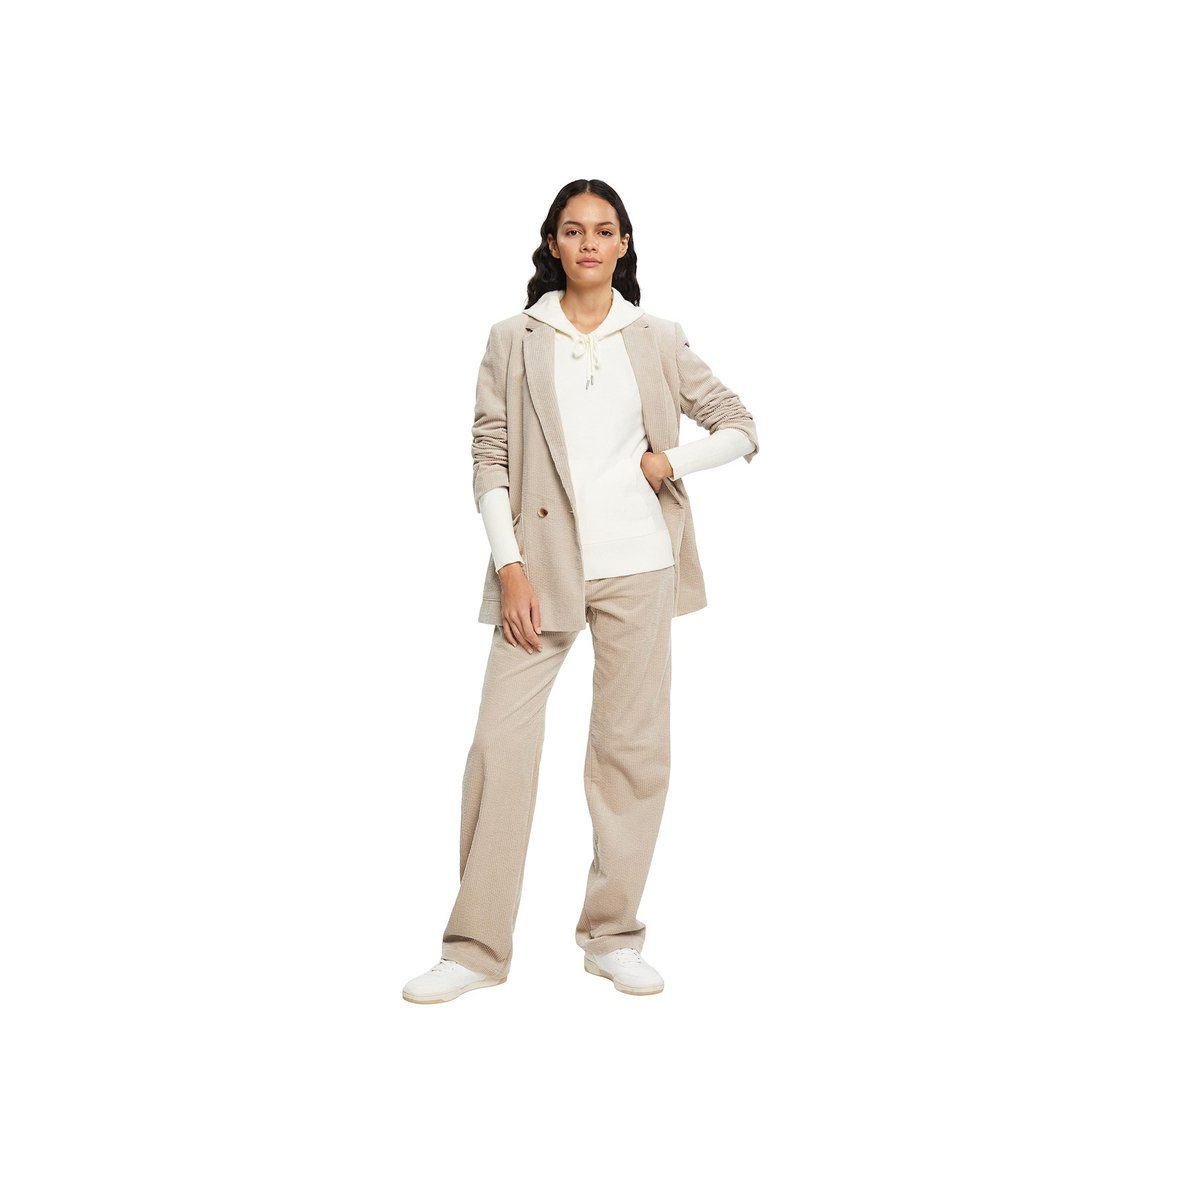 (1-tlg) regular Esprit Sweatshirt fit off offwhite white